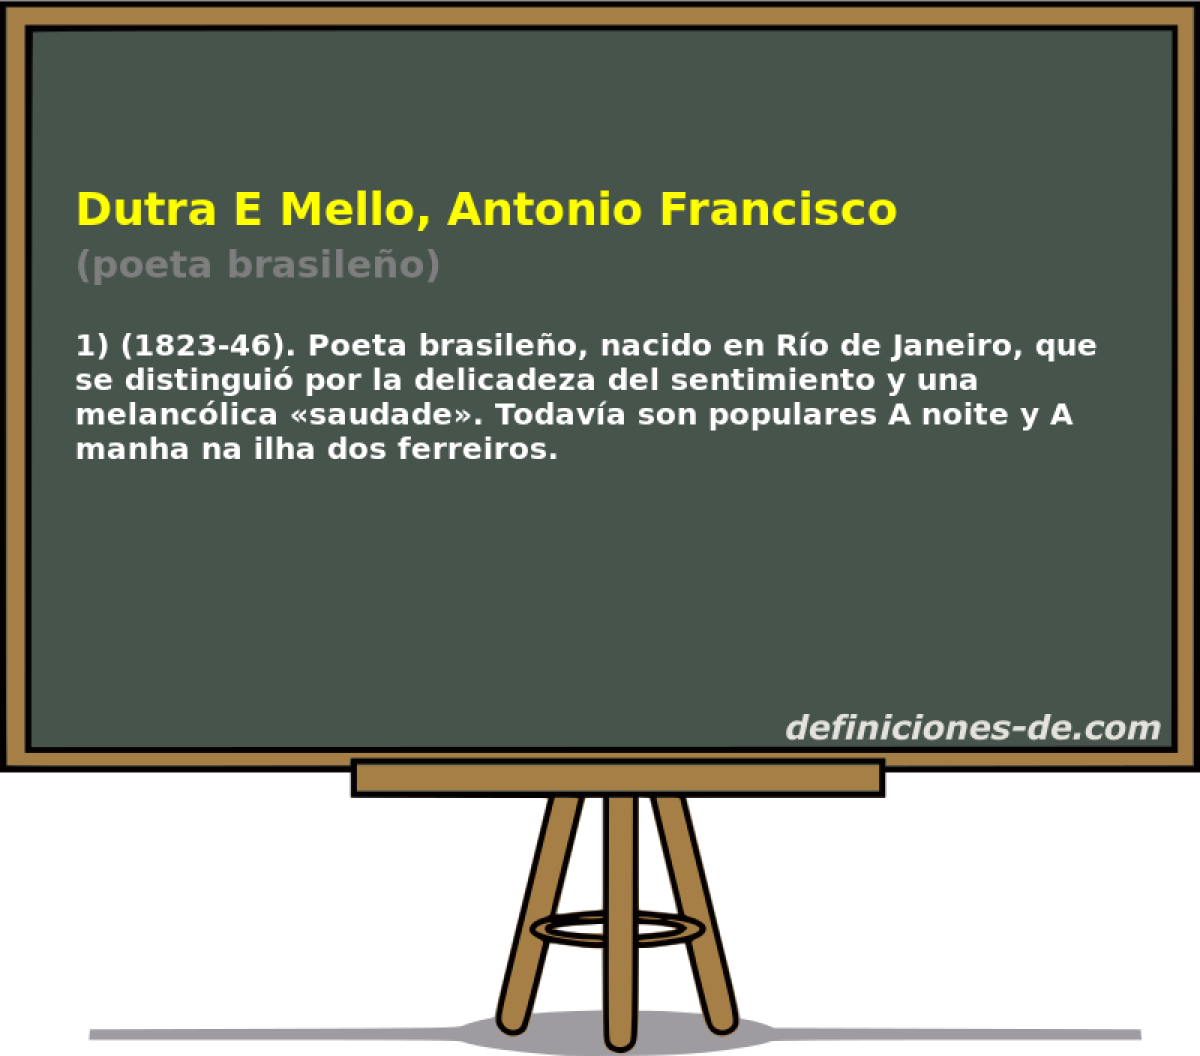 Dutra E Mello, Antonio Francisco (poeta brasileo)